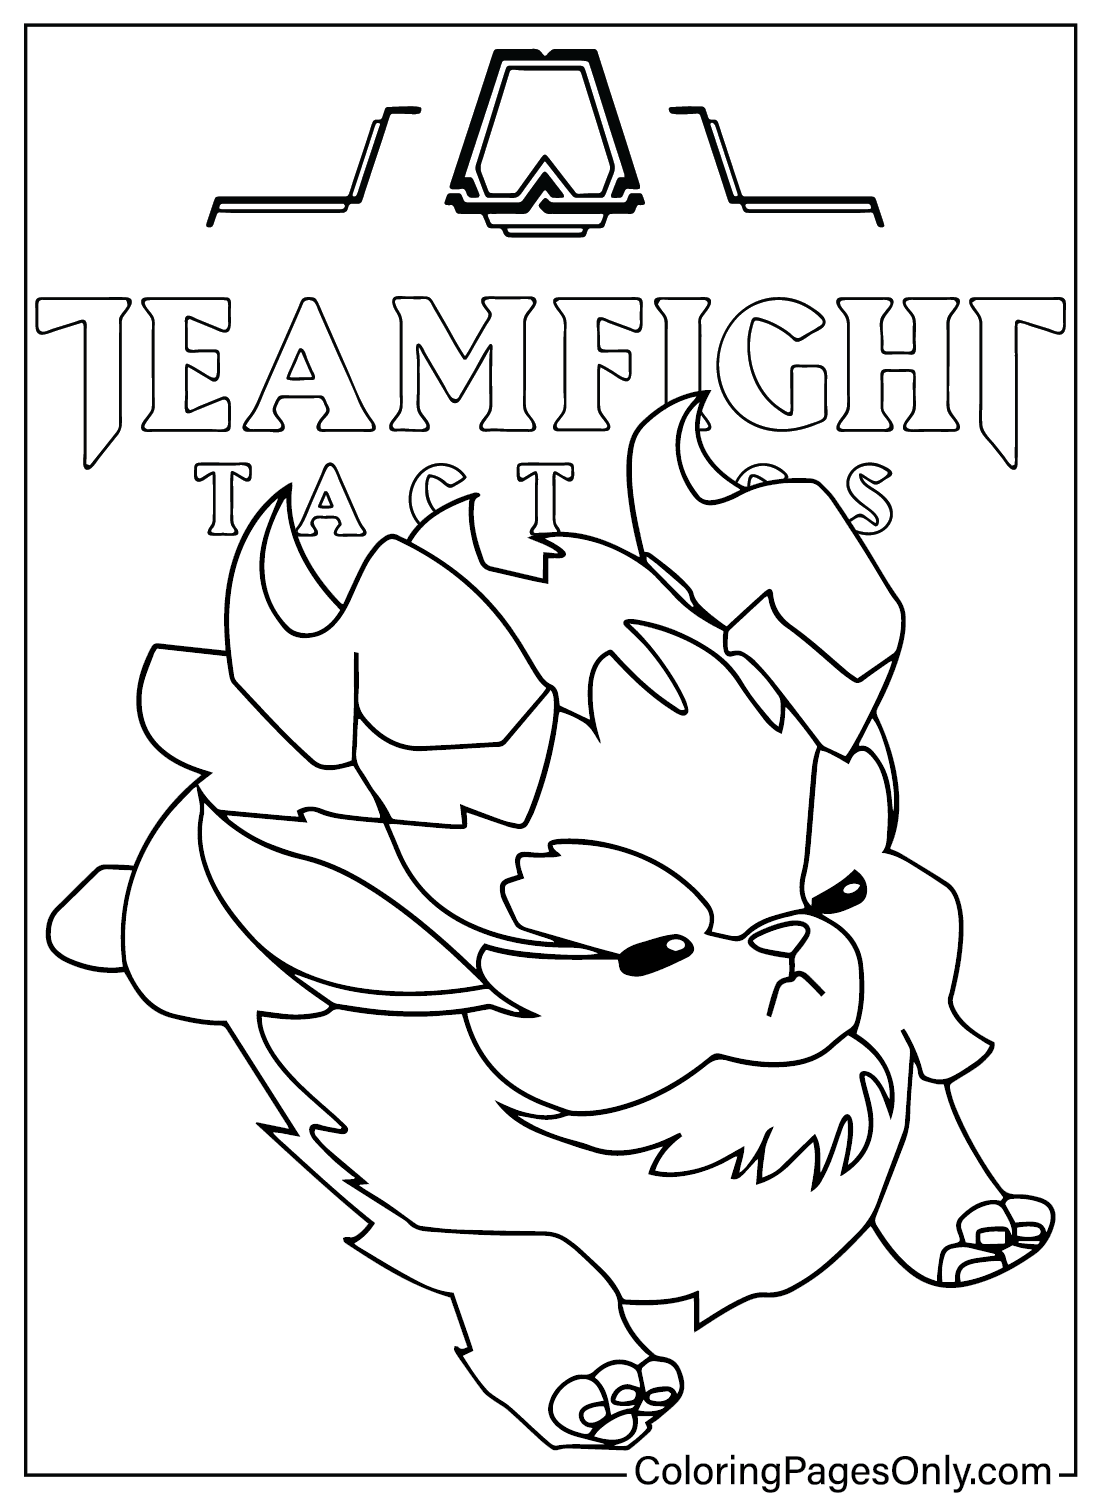 Раскраска Furyhorn Teamfight Tactics из Teamfight Tactics